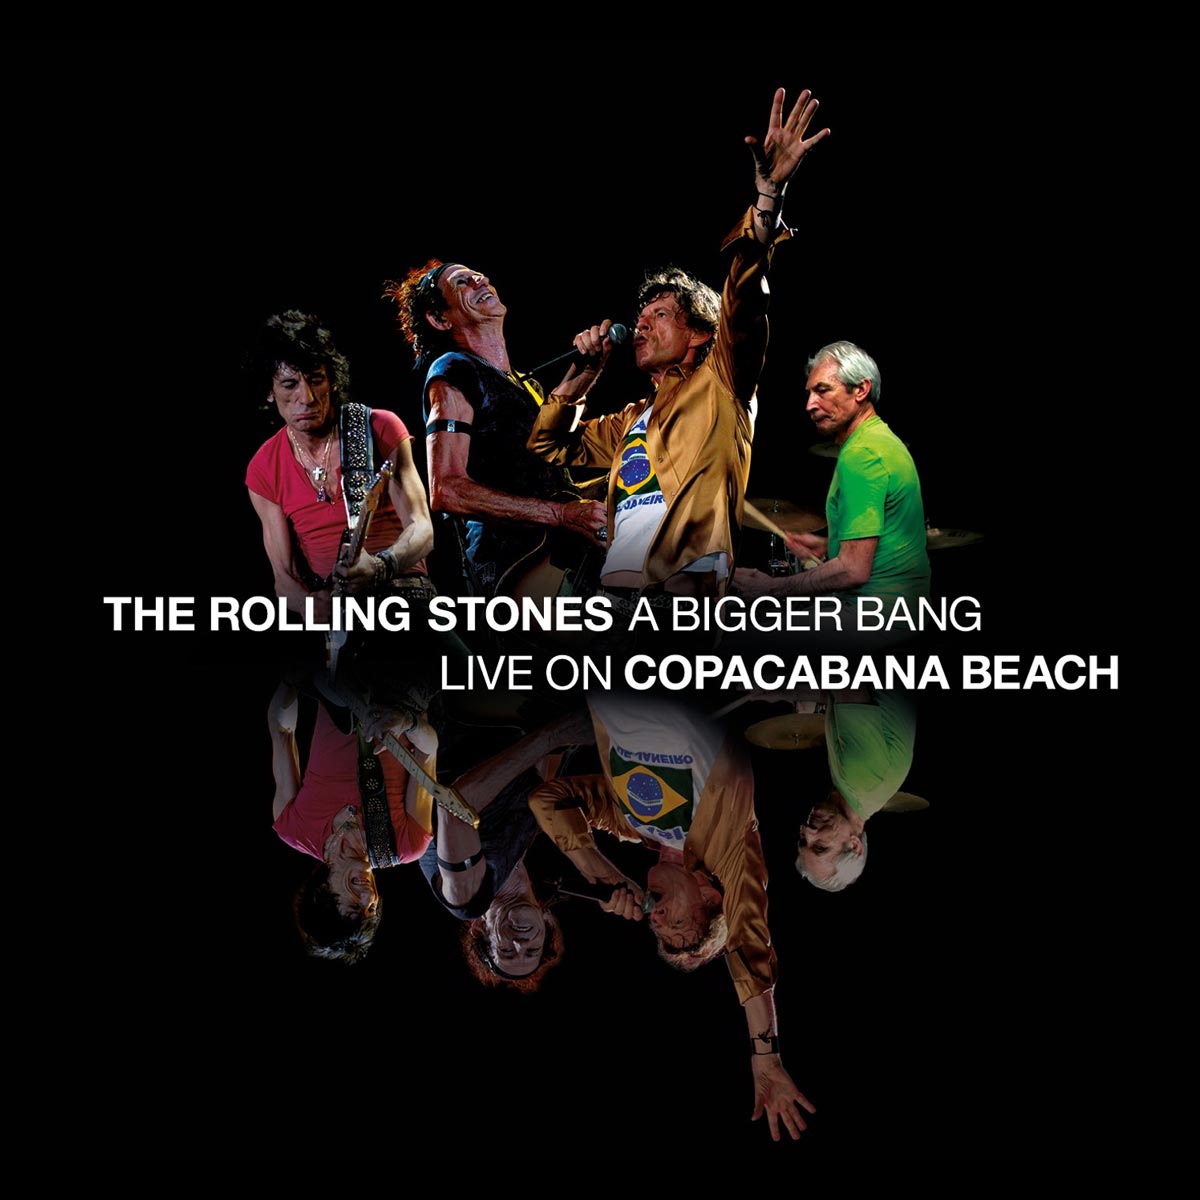 Rolling Stones: A bigger bang